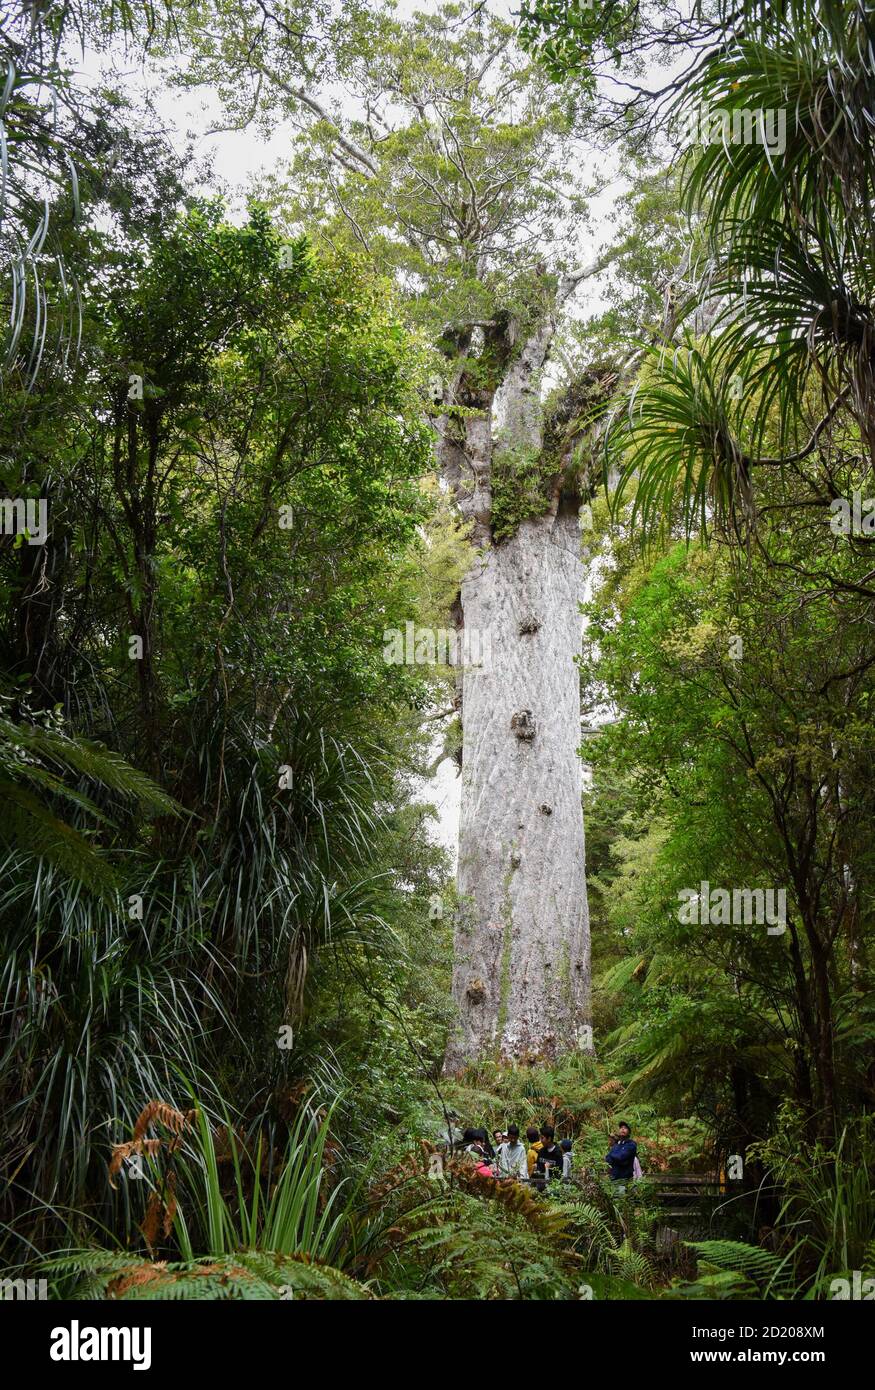 Northland, Nuova Zelanda. 6 Ott 2020. La gente guarda un albero di kauri alla foresta di Waipoua in Northland, Nuova Zelanda, 6 ottobre 2020. Waipoua, e le foreste adiacenti, costituiscono il più grande tratto rimanente di foresta nativa nel Northland e la casa degli alberi di kauri. Credit: Guo Lei/Xinhua/Alamy Live News Foto Stock